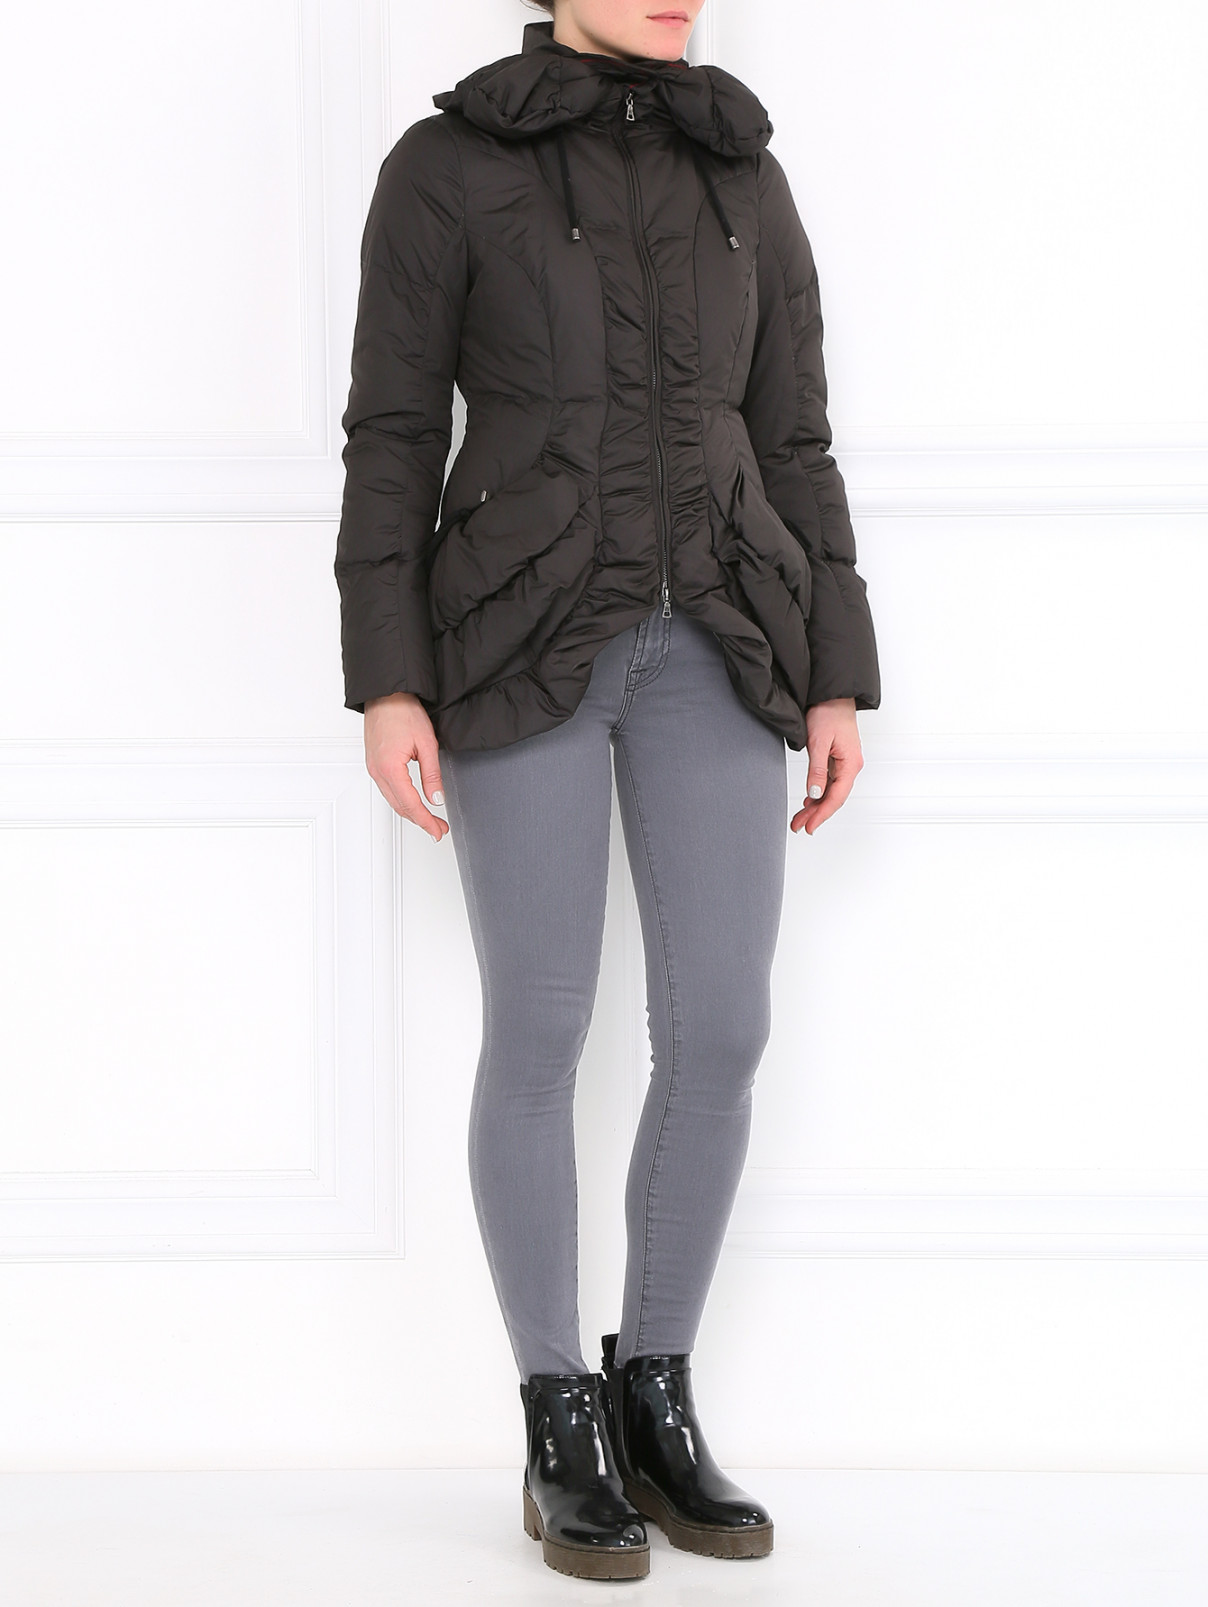 Пуховая куртка с боковыми карманами Isola Marras  –  Модель Общий вид  – Цвет:  Черный